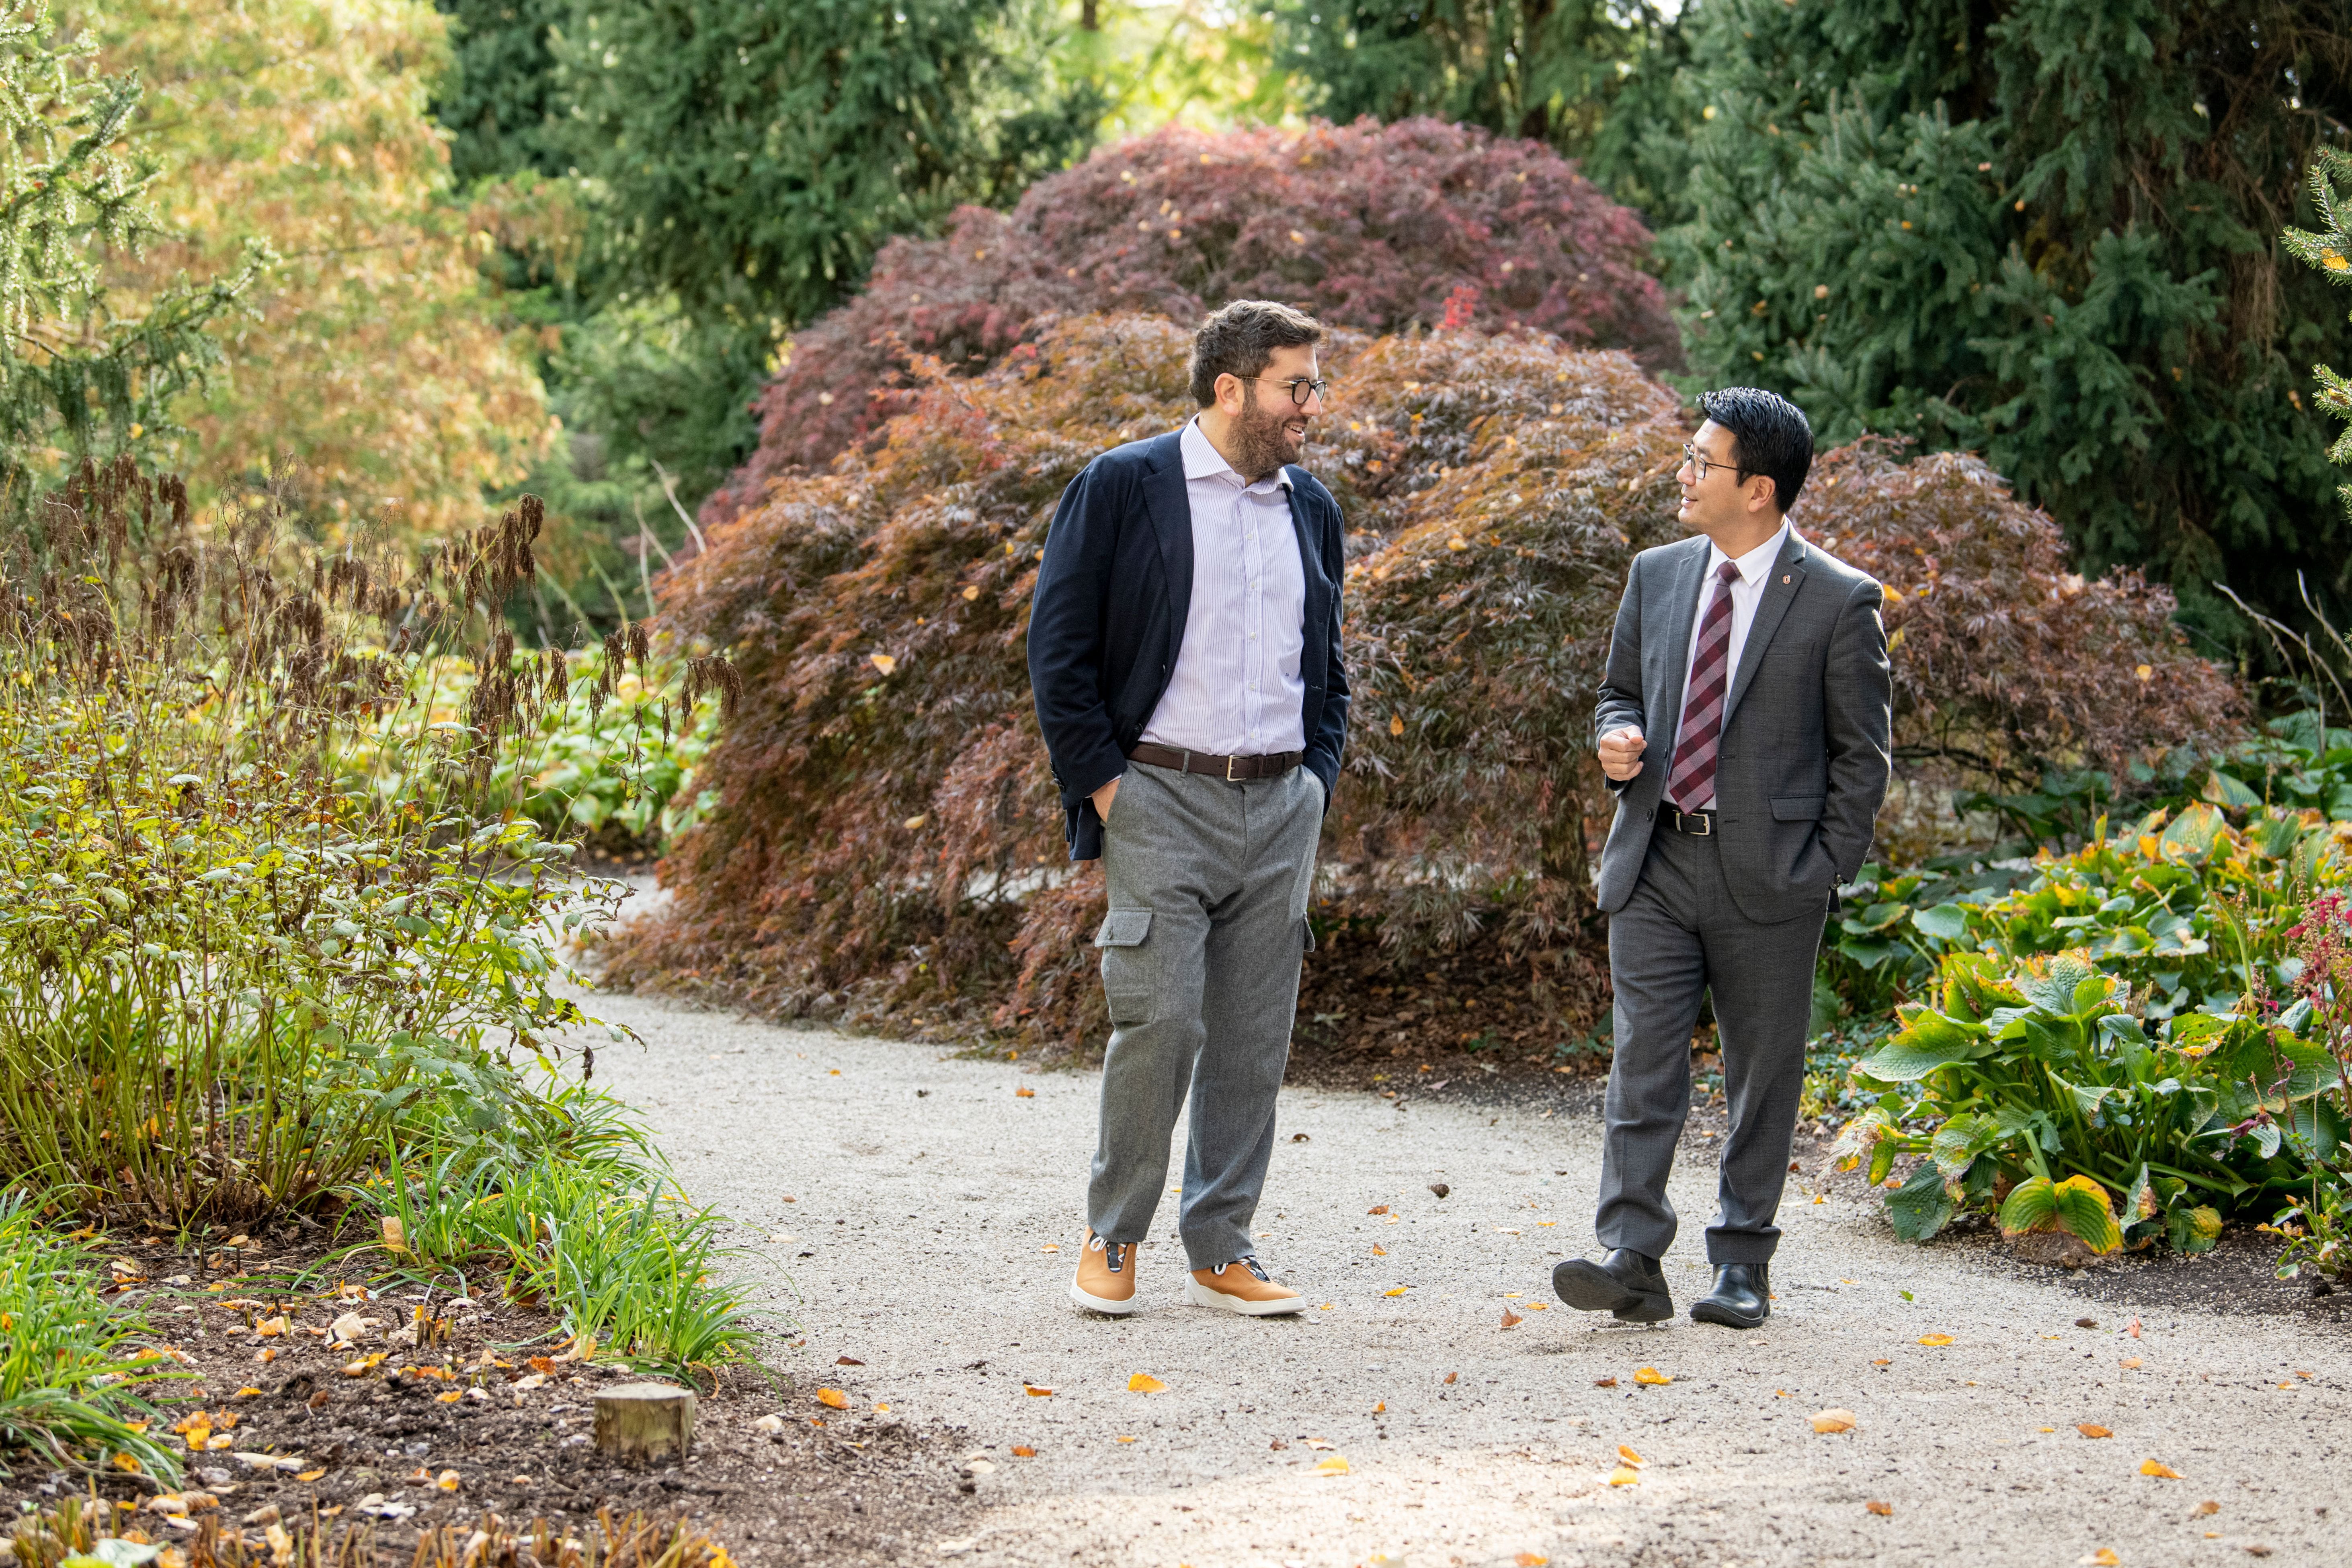 Jeffrey Schottenstein and Ohio State's Dr. Luan Phan walk on a gravel path in a garden